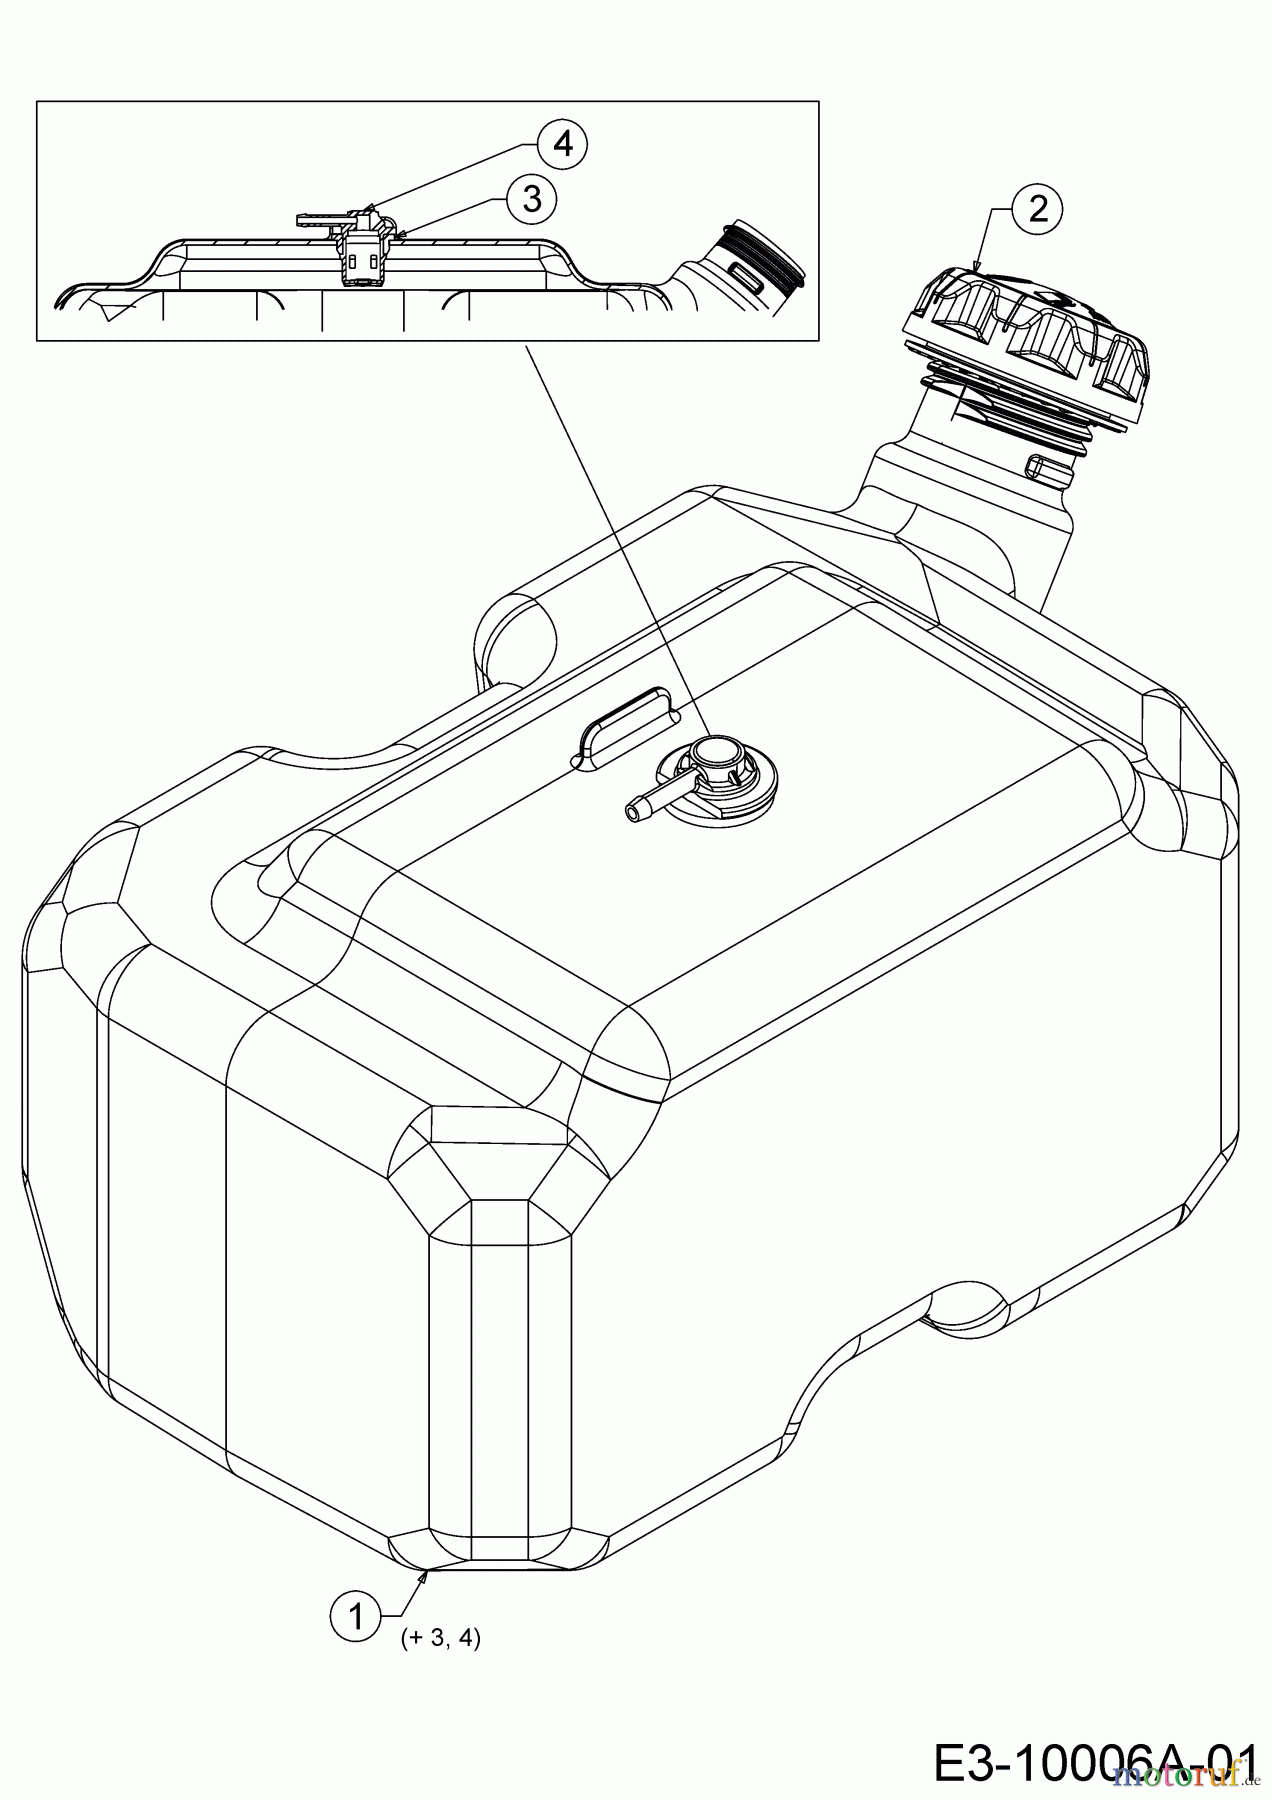  WOLF-Garten Expert Rasentraktoren 95.165 H 13CDA1VB650  (2018) Tank